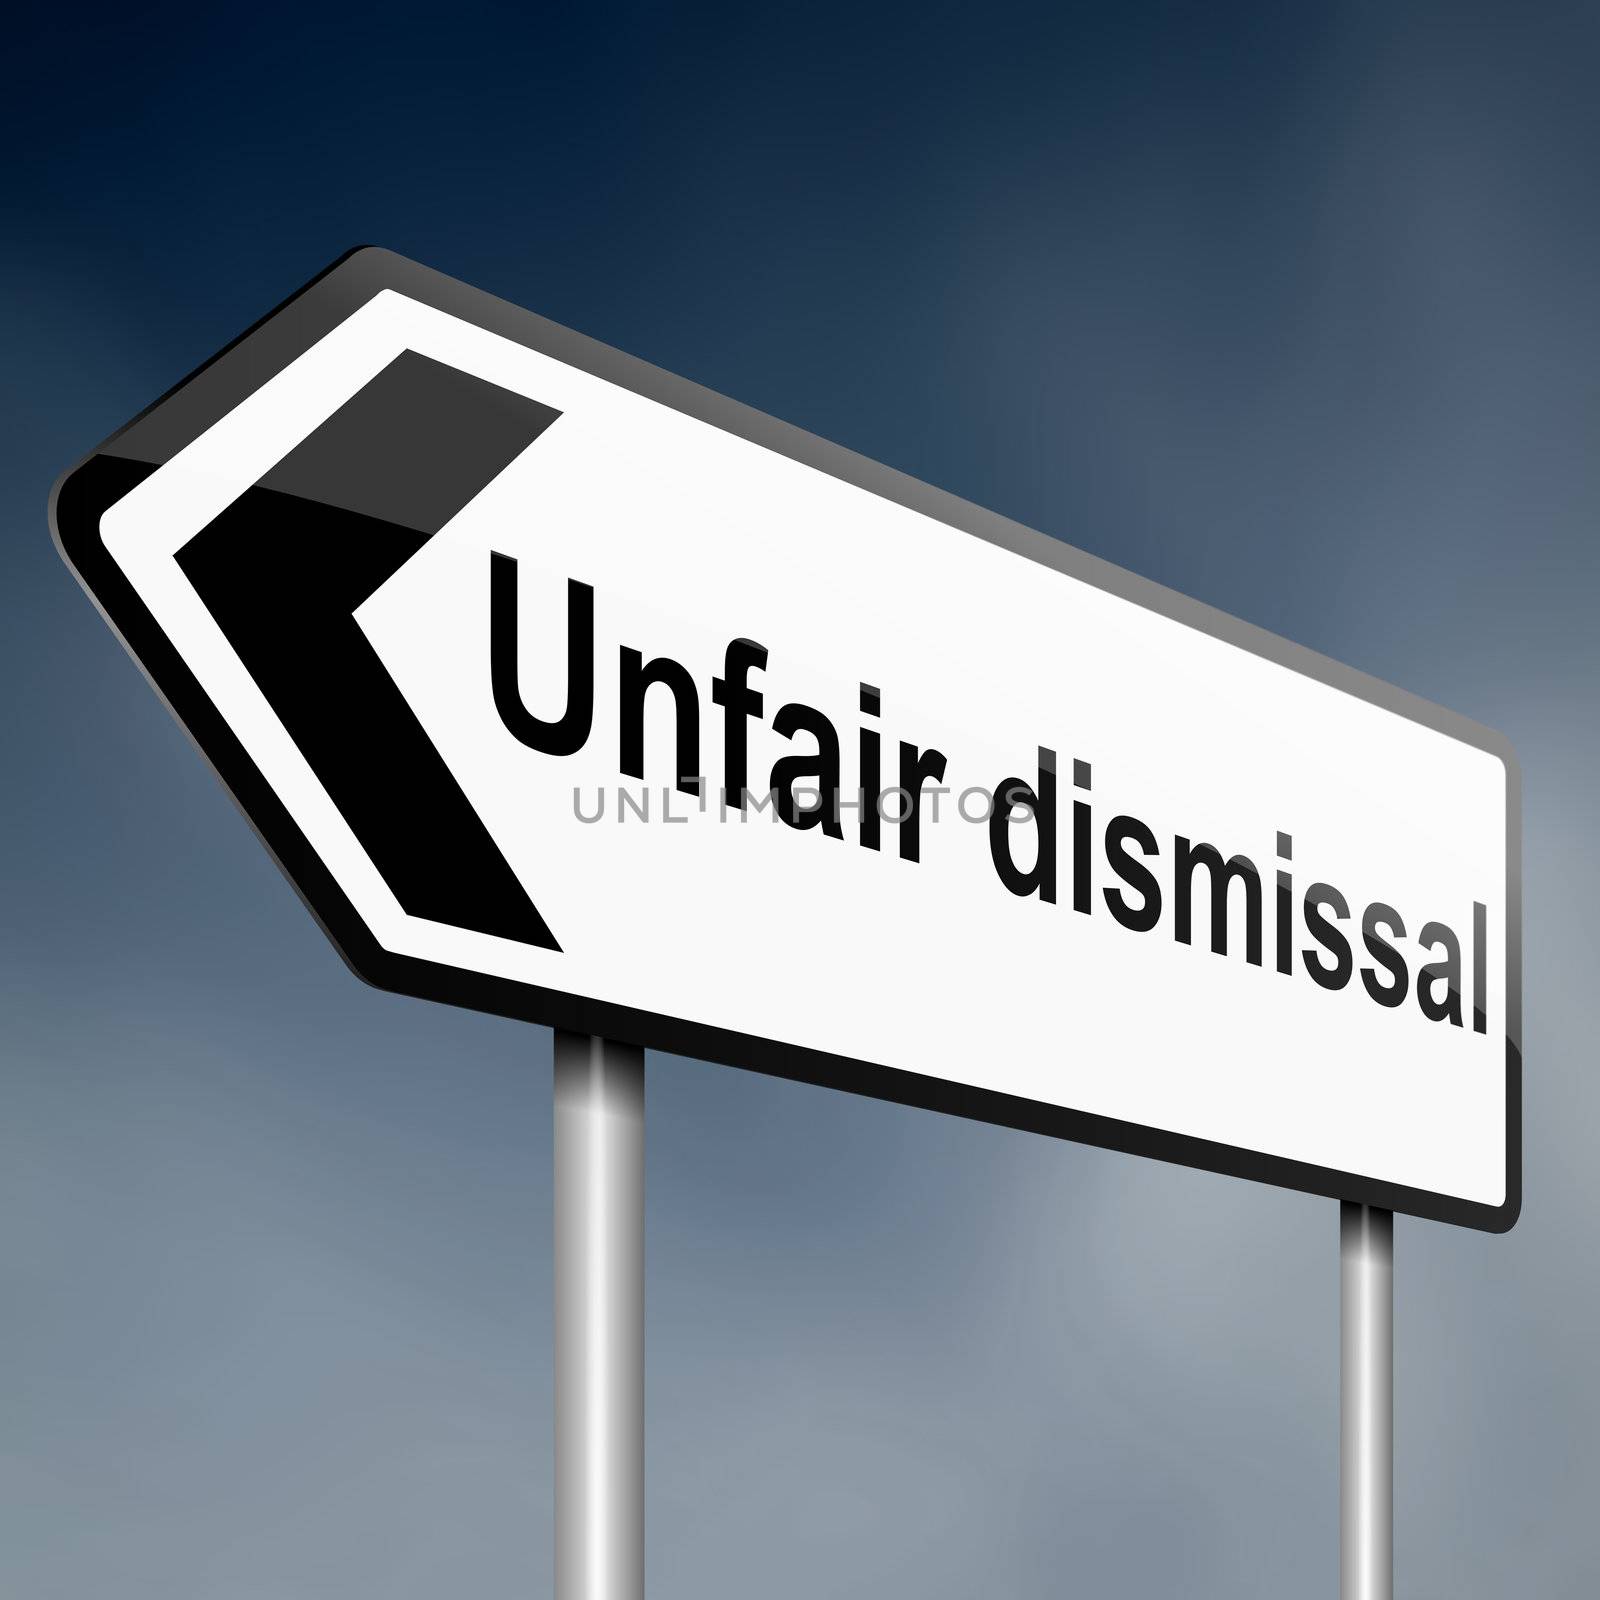 Unfair dismissal concept. by 72soul